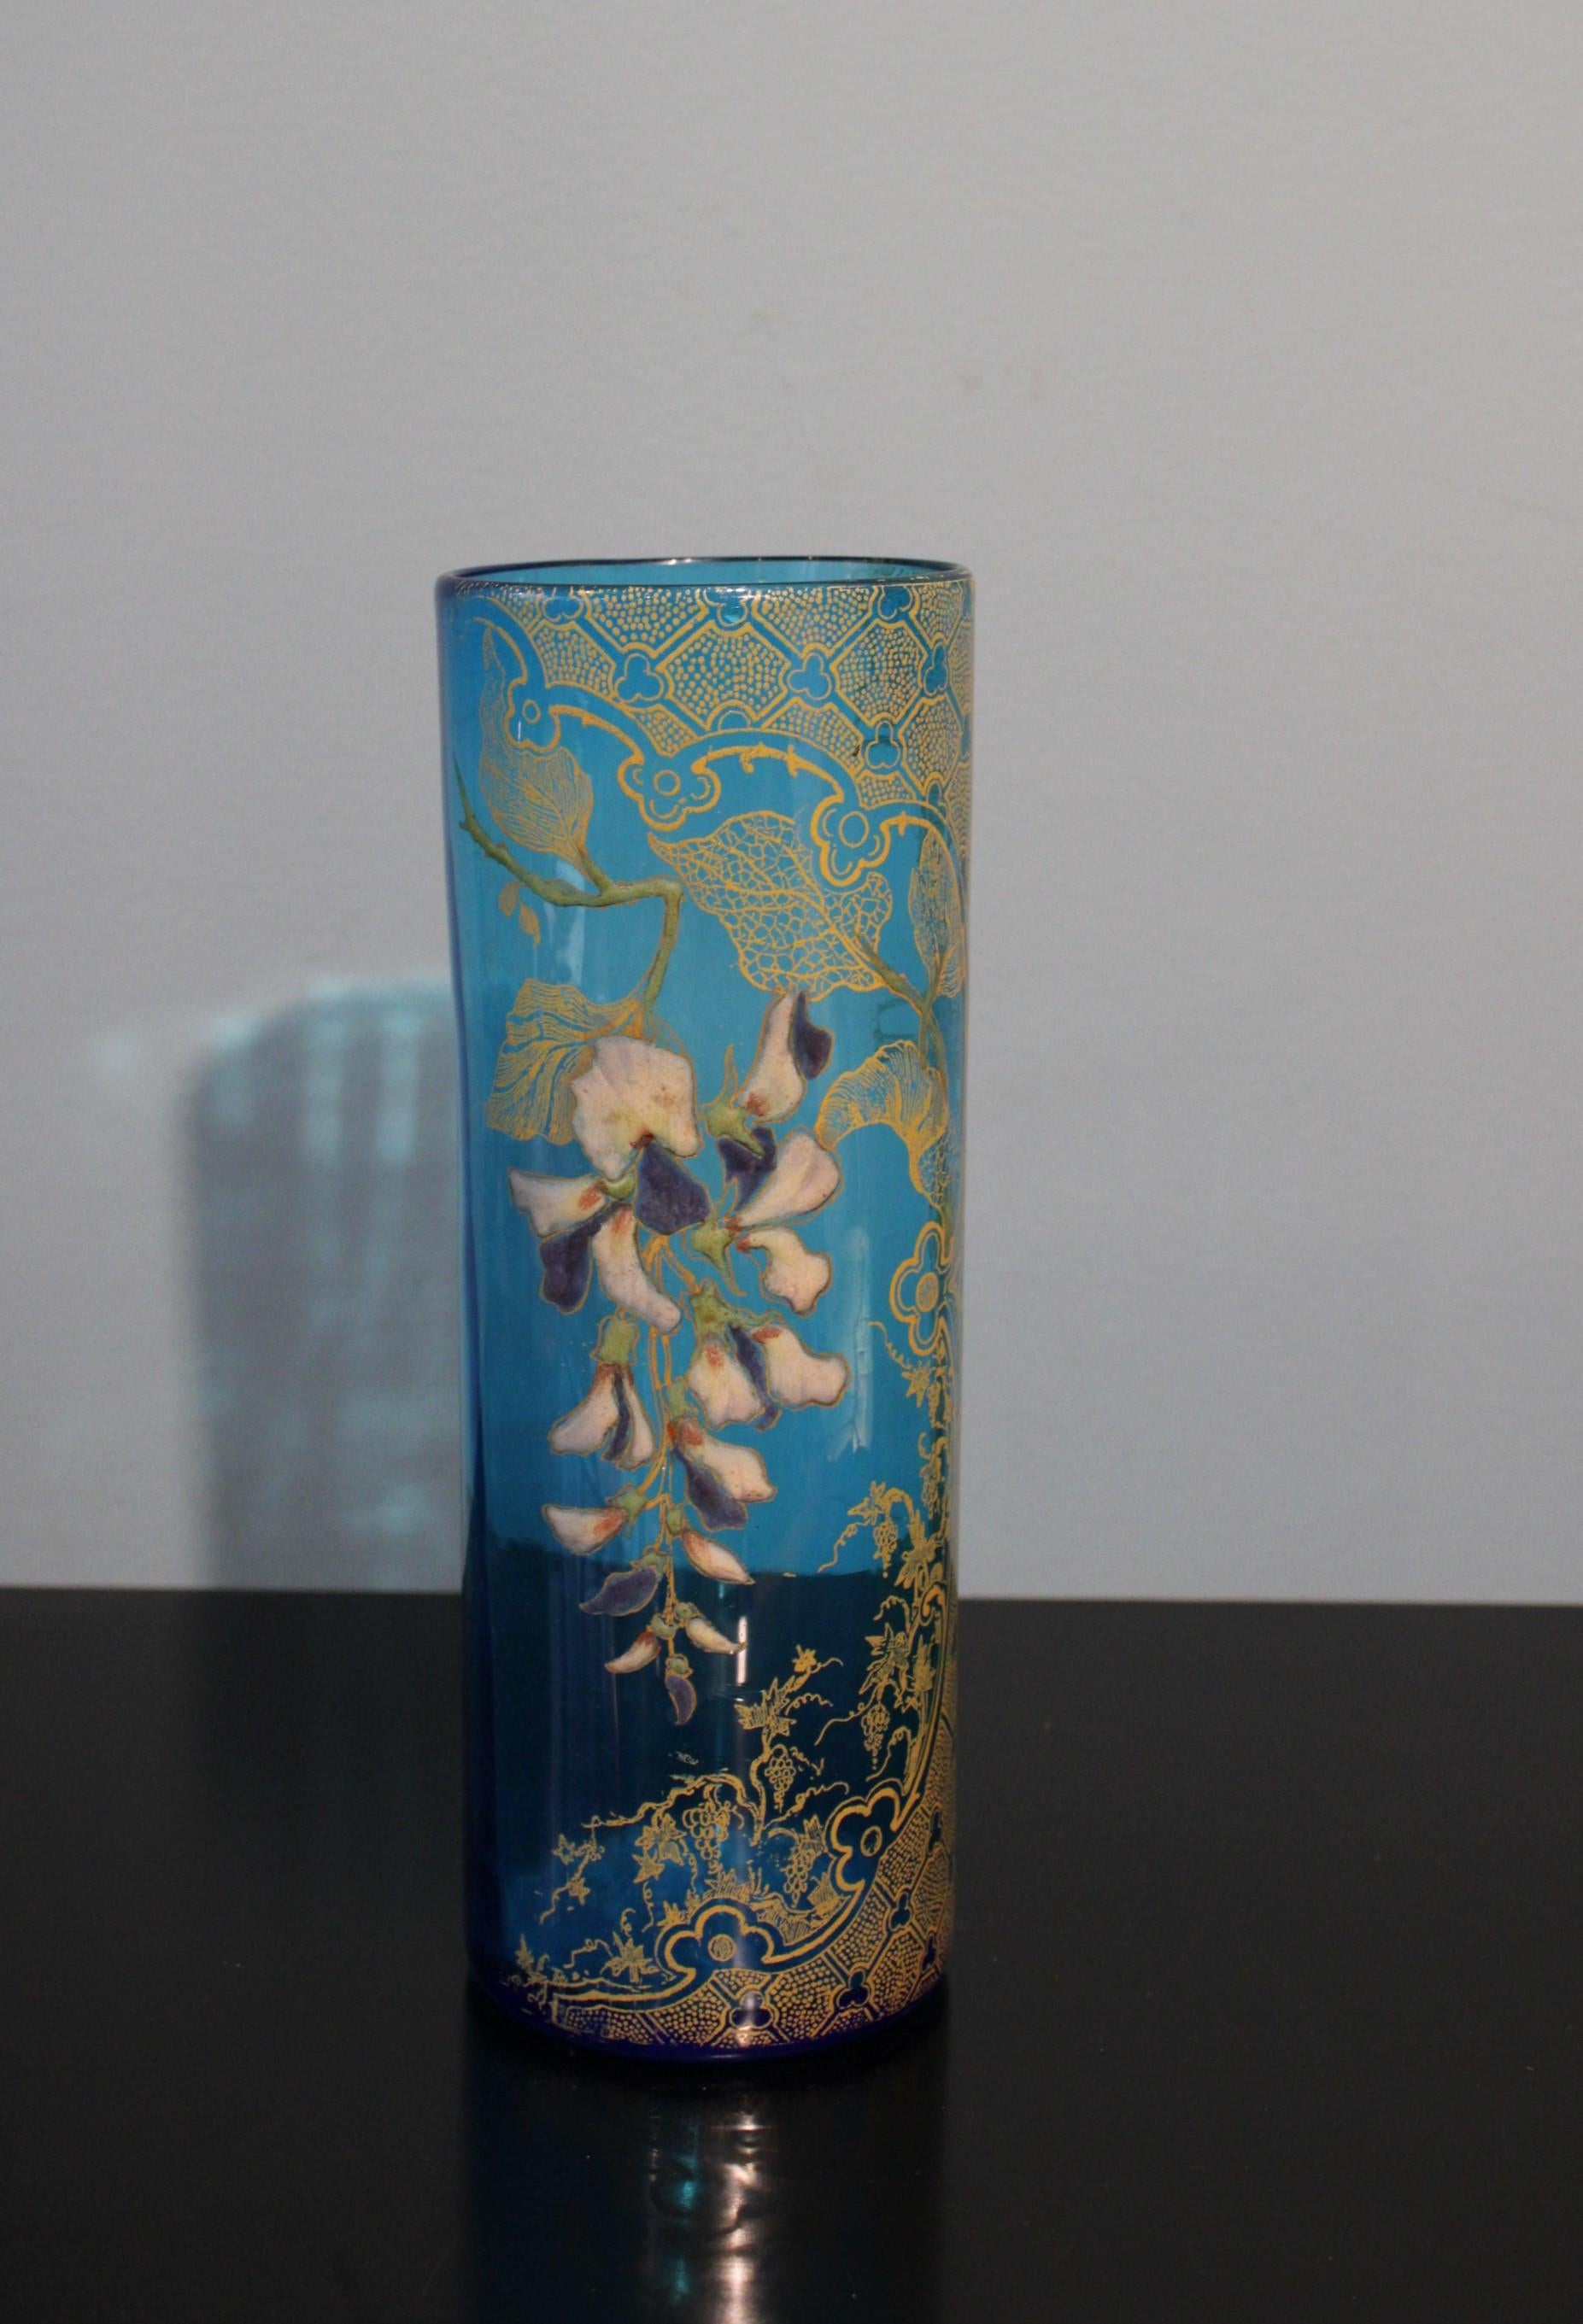 Vase en verre bleu, style Art nouveau. 
Circa 1900.
Décoration émaillée et dorée.